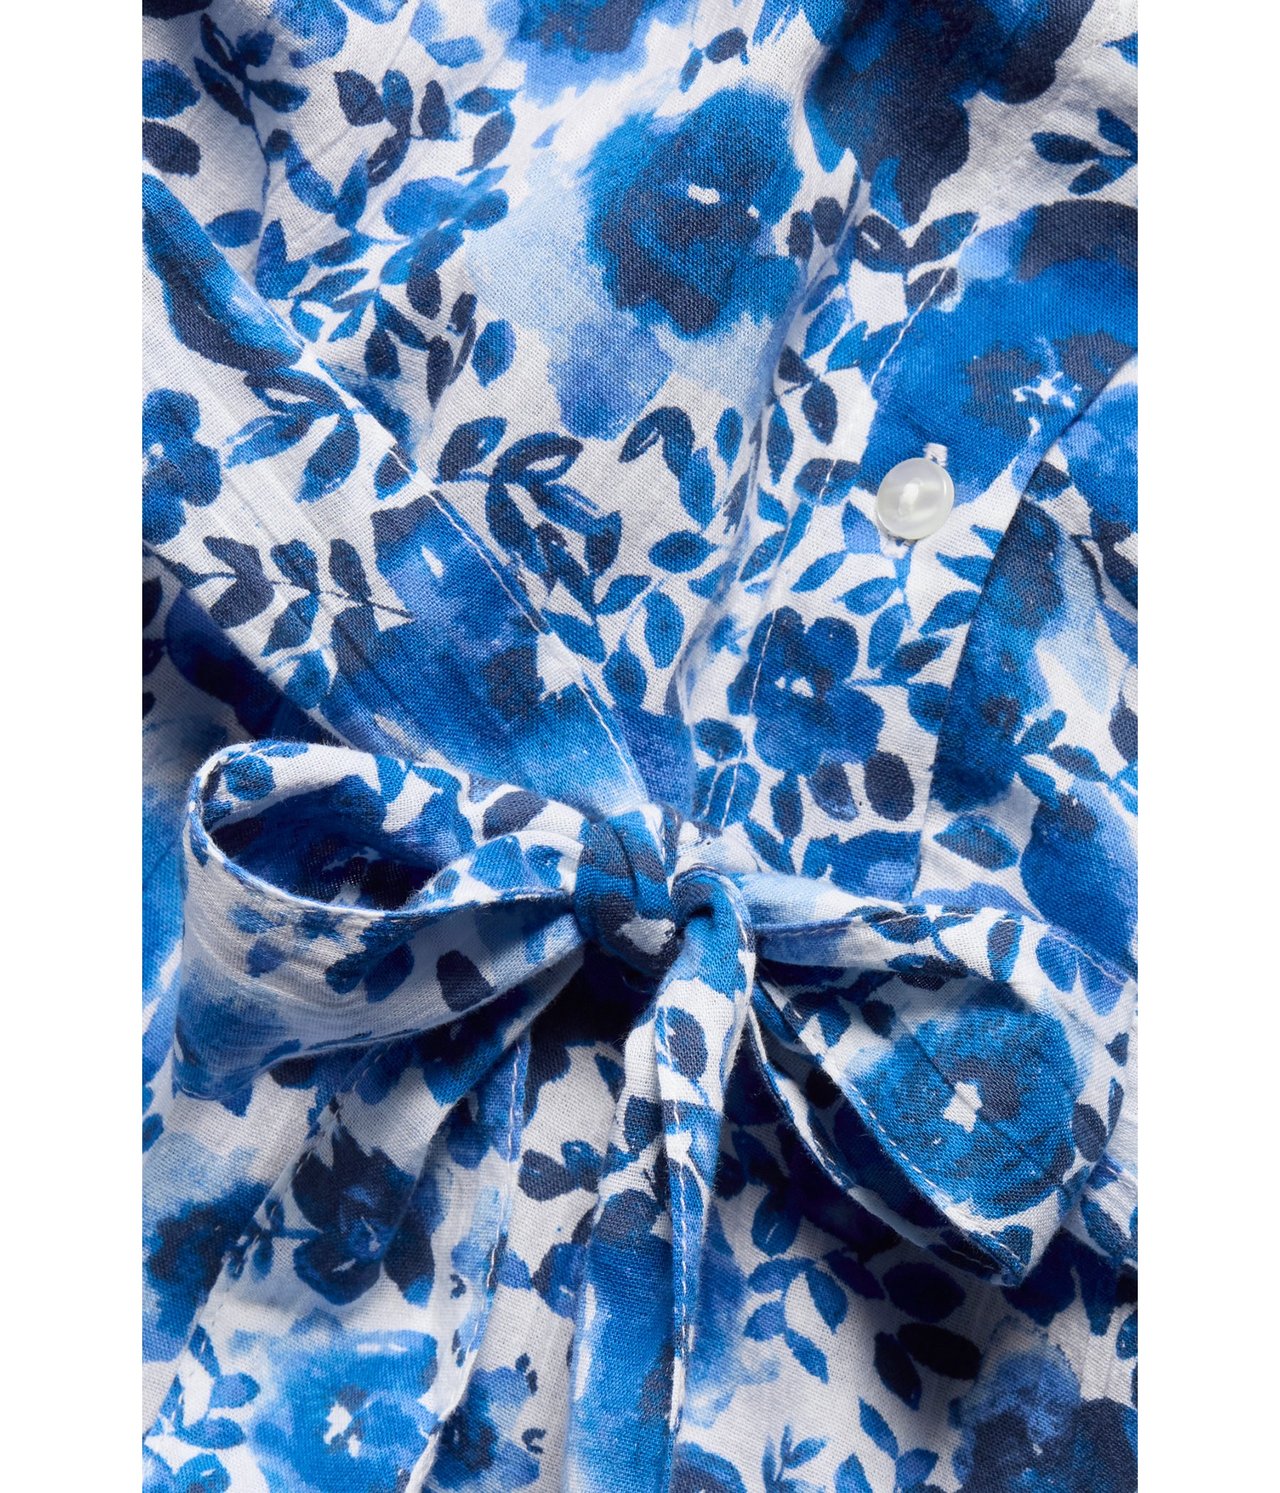 Blommig klänning Blå - null - 5